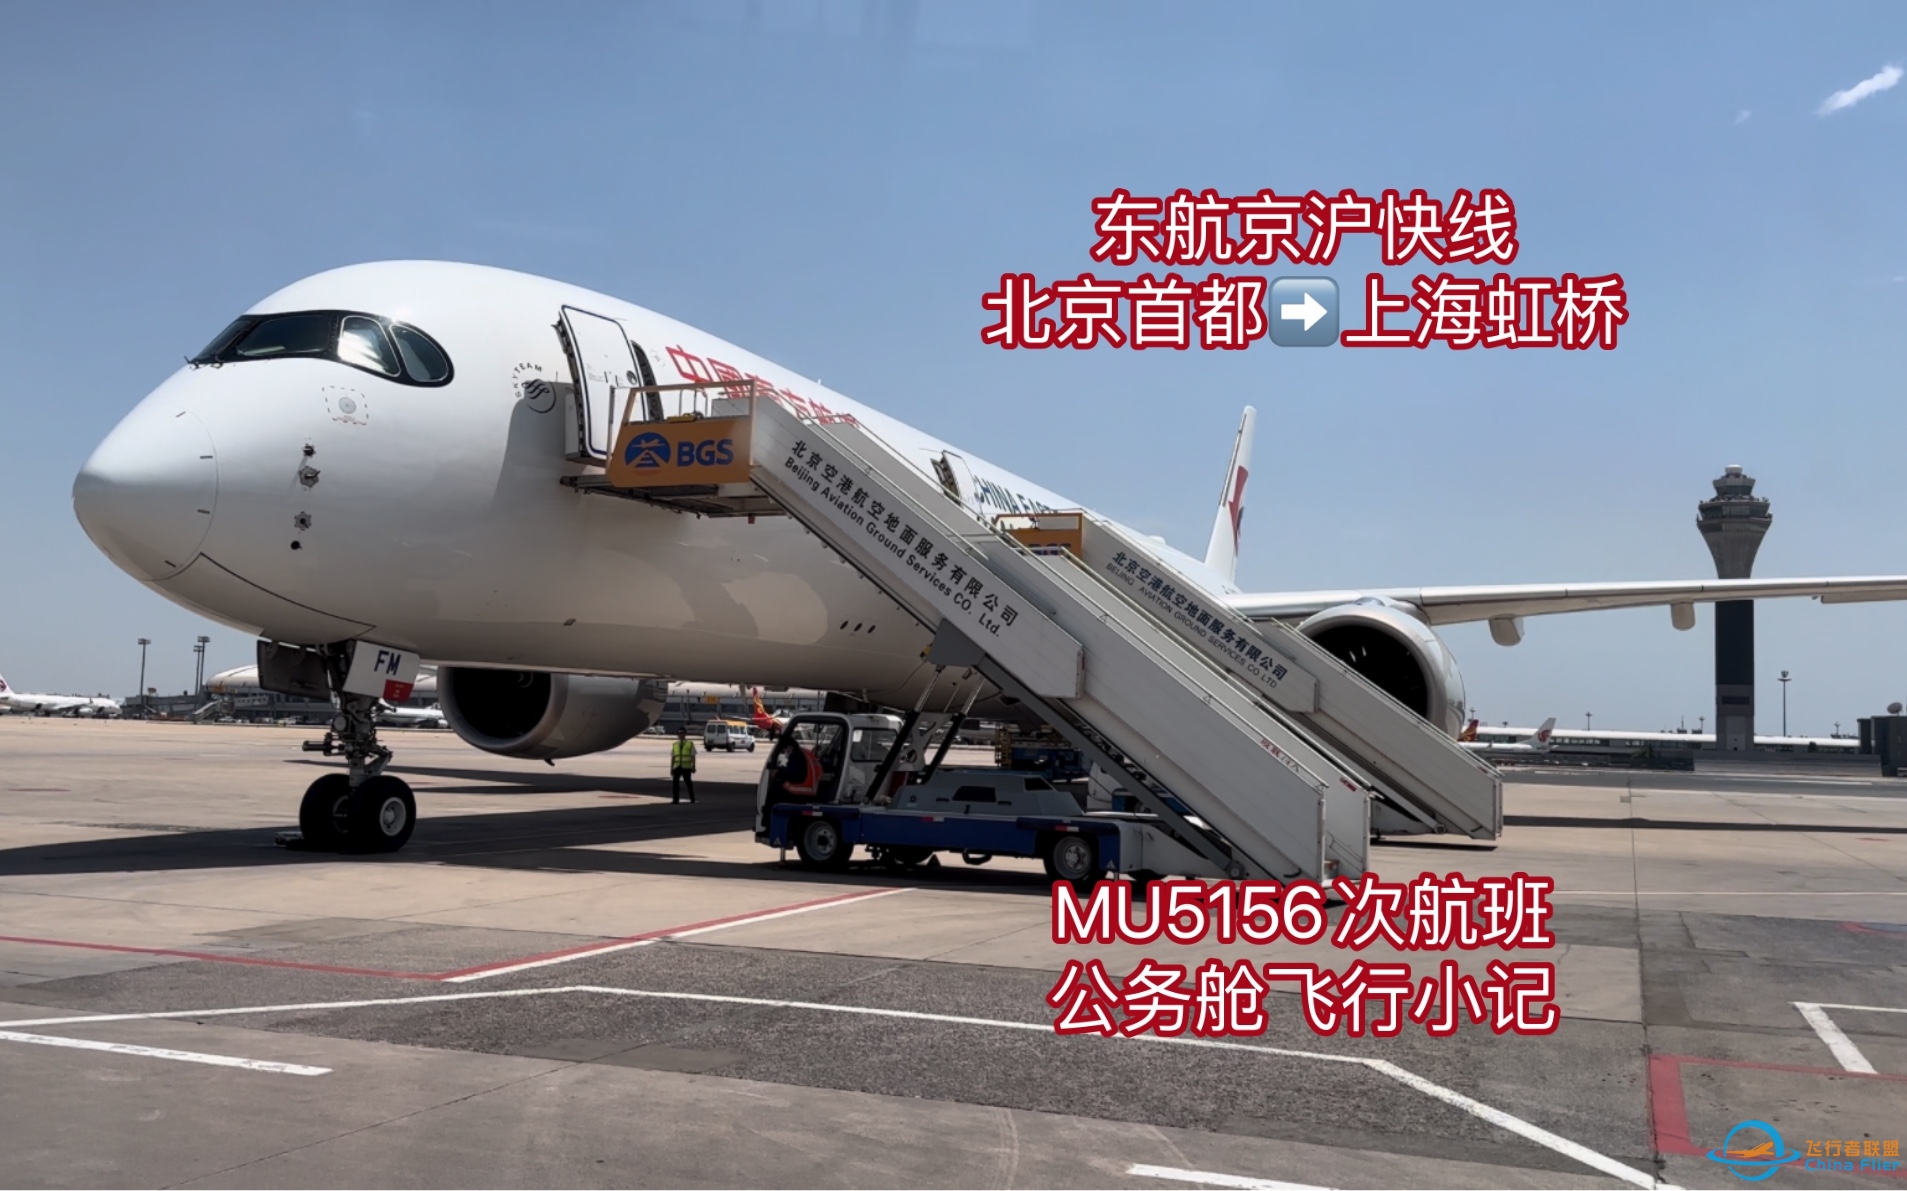 【飞行体验】晚点了，但不影响体验—东航京沪快线公务舱 （MU5156次）PEK- SHA 飞行小记-1205 